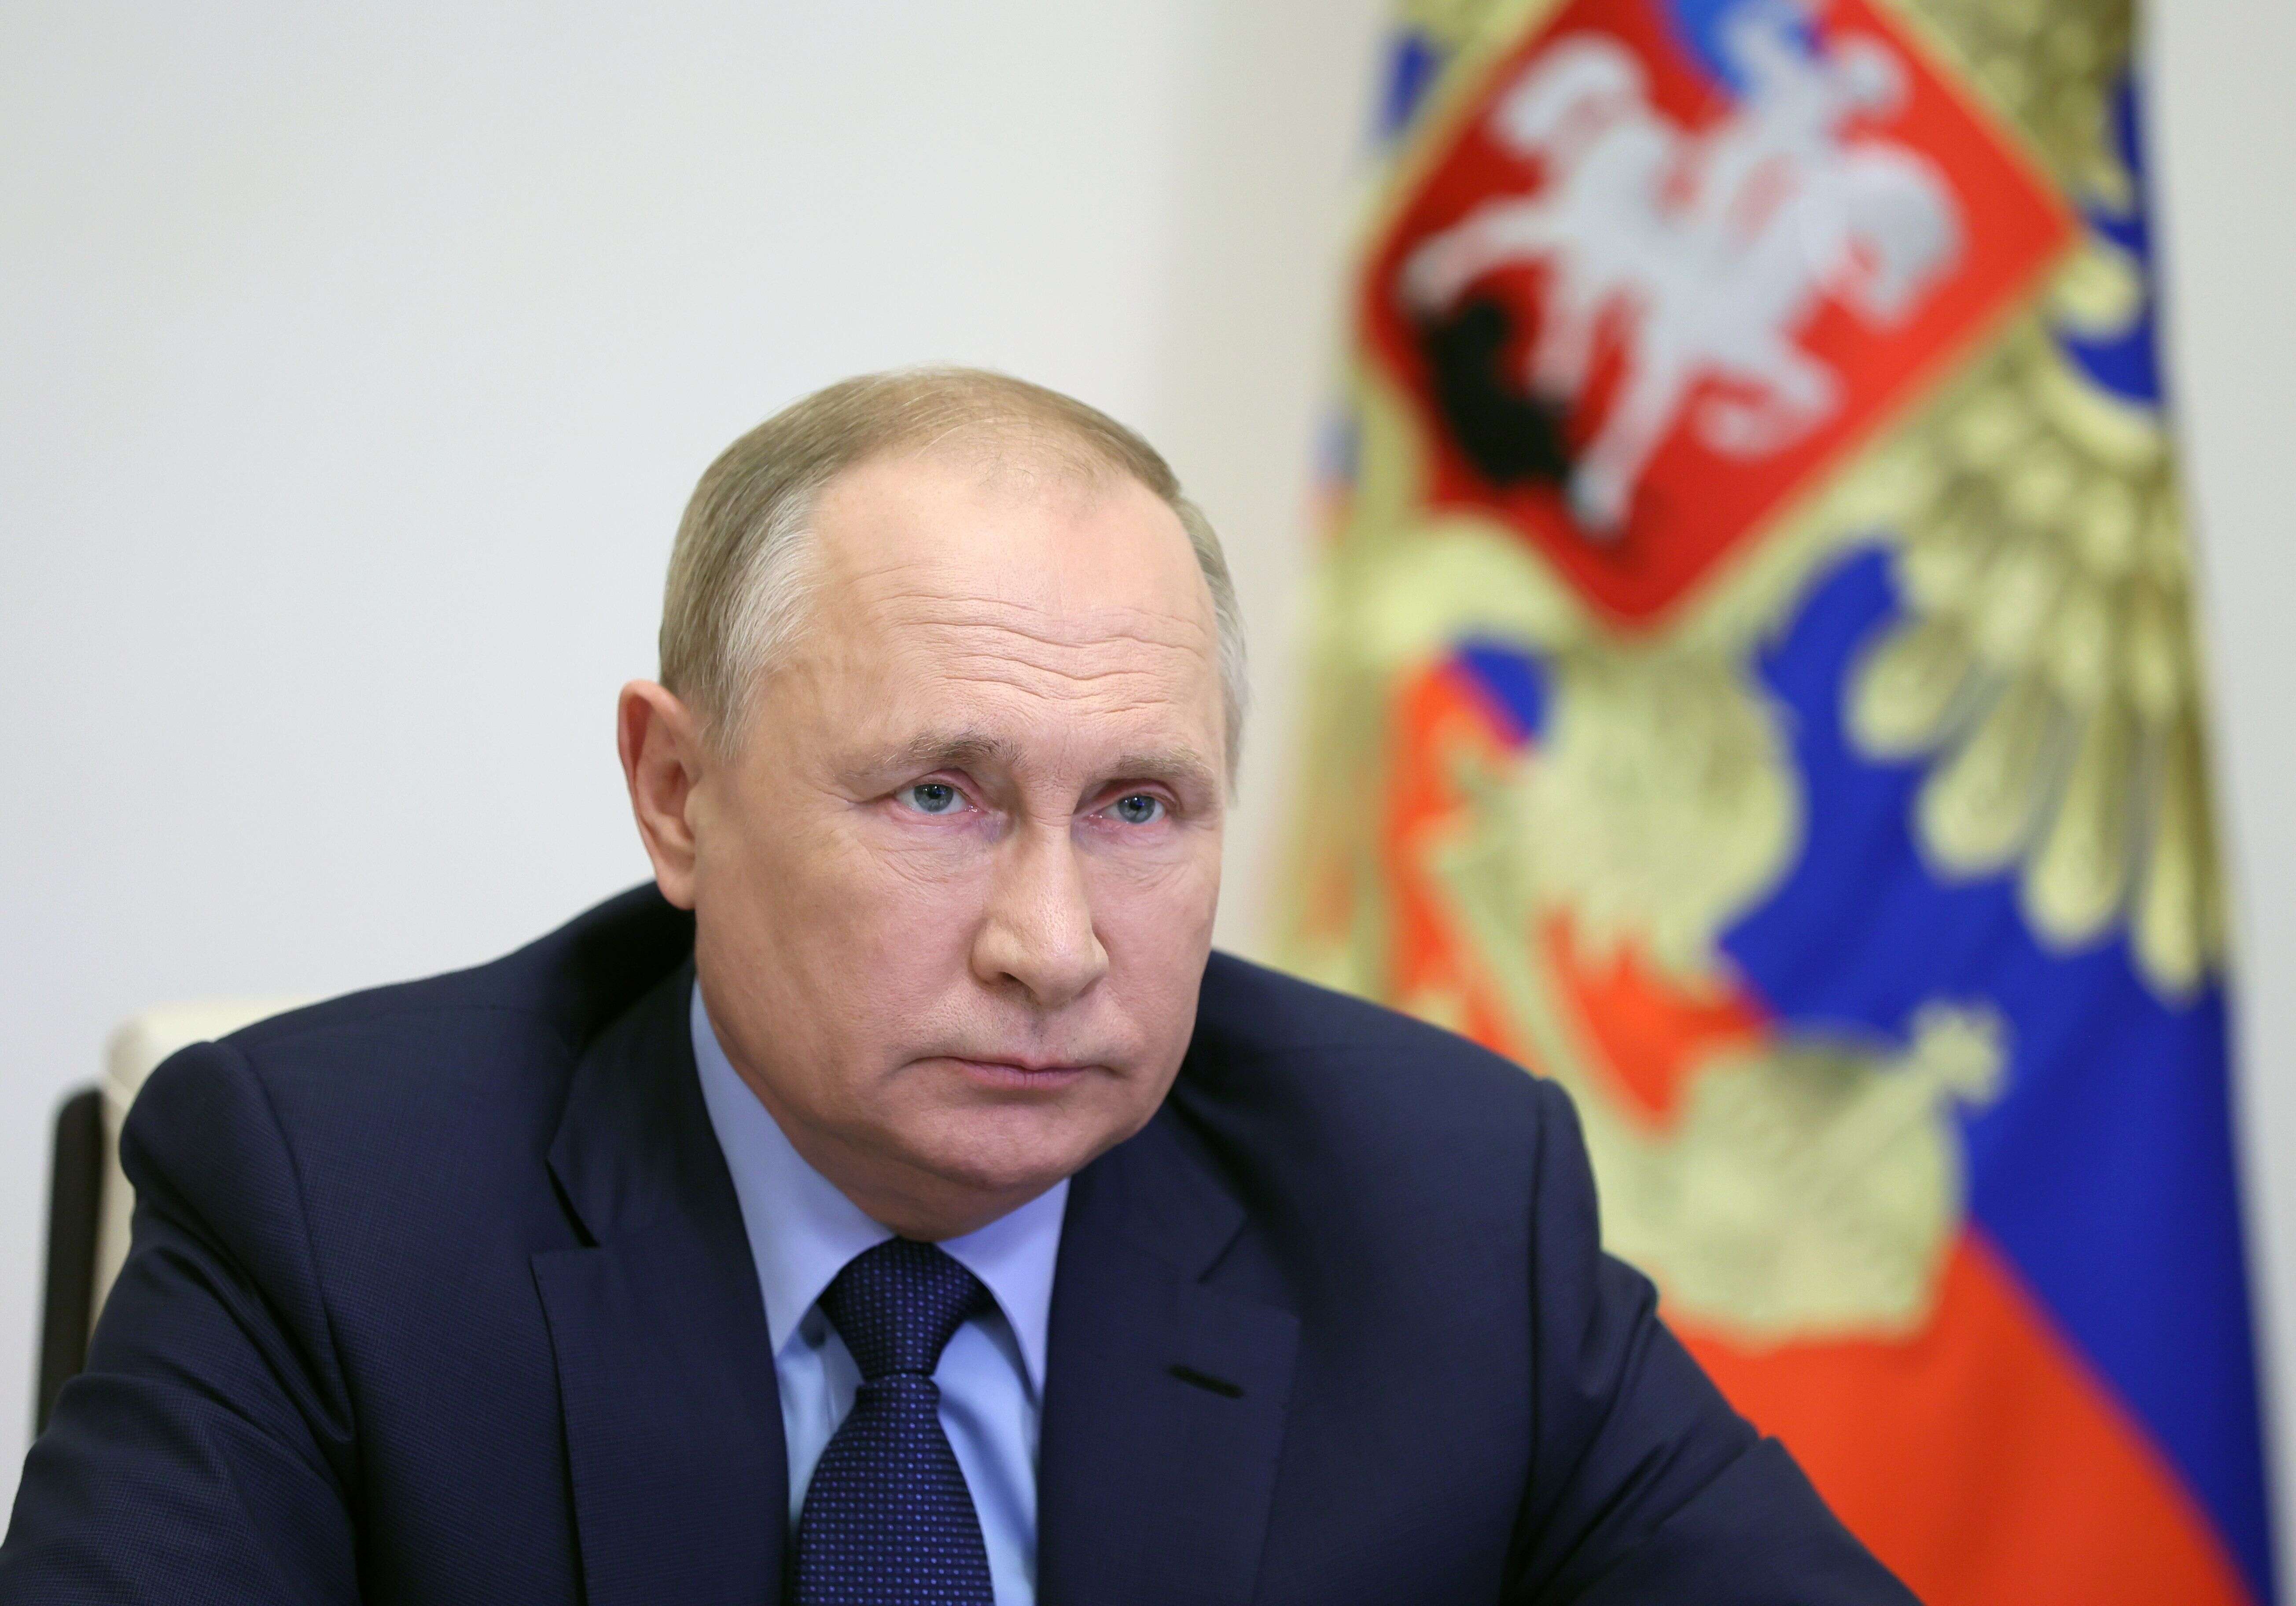 Le président russe Vladimir Poutine a nié en bloc être à l'origine de la crise migratoire entre la Biélorussie et la Pologne.